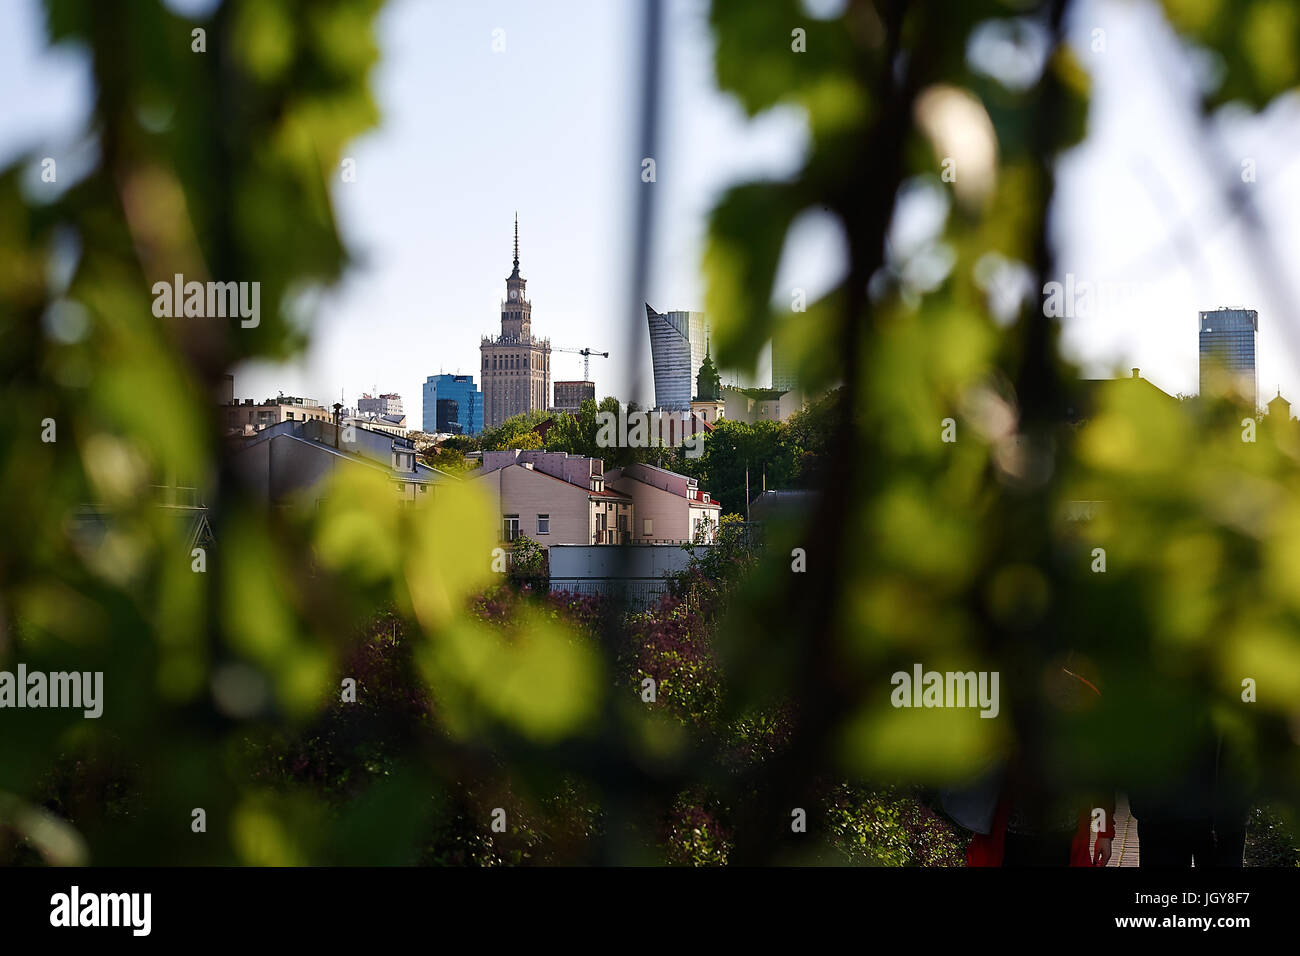 Palast der Kultur und Wissenschaft (PKiN) aus dem Garten auf dem Dach der Universitätsbibliothek Warschau, Warschau, die Hauptstadt von Polen gesehen. Stockfoto